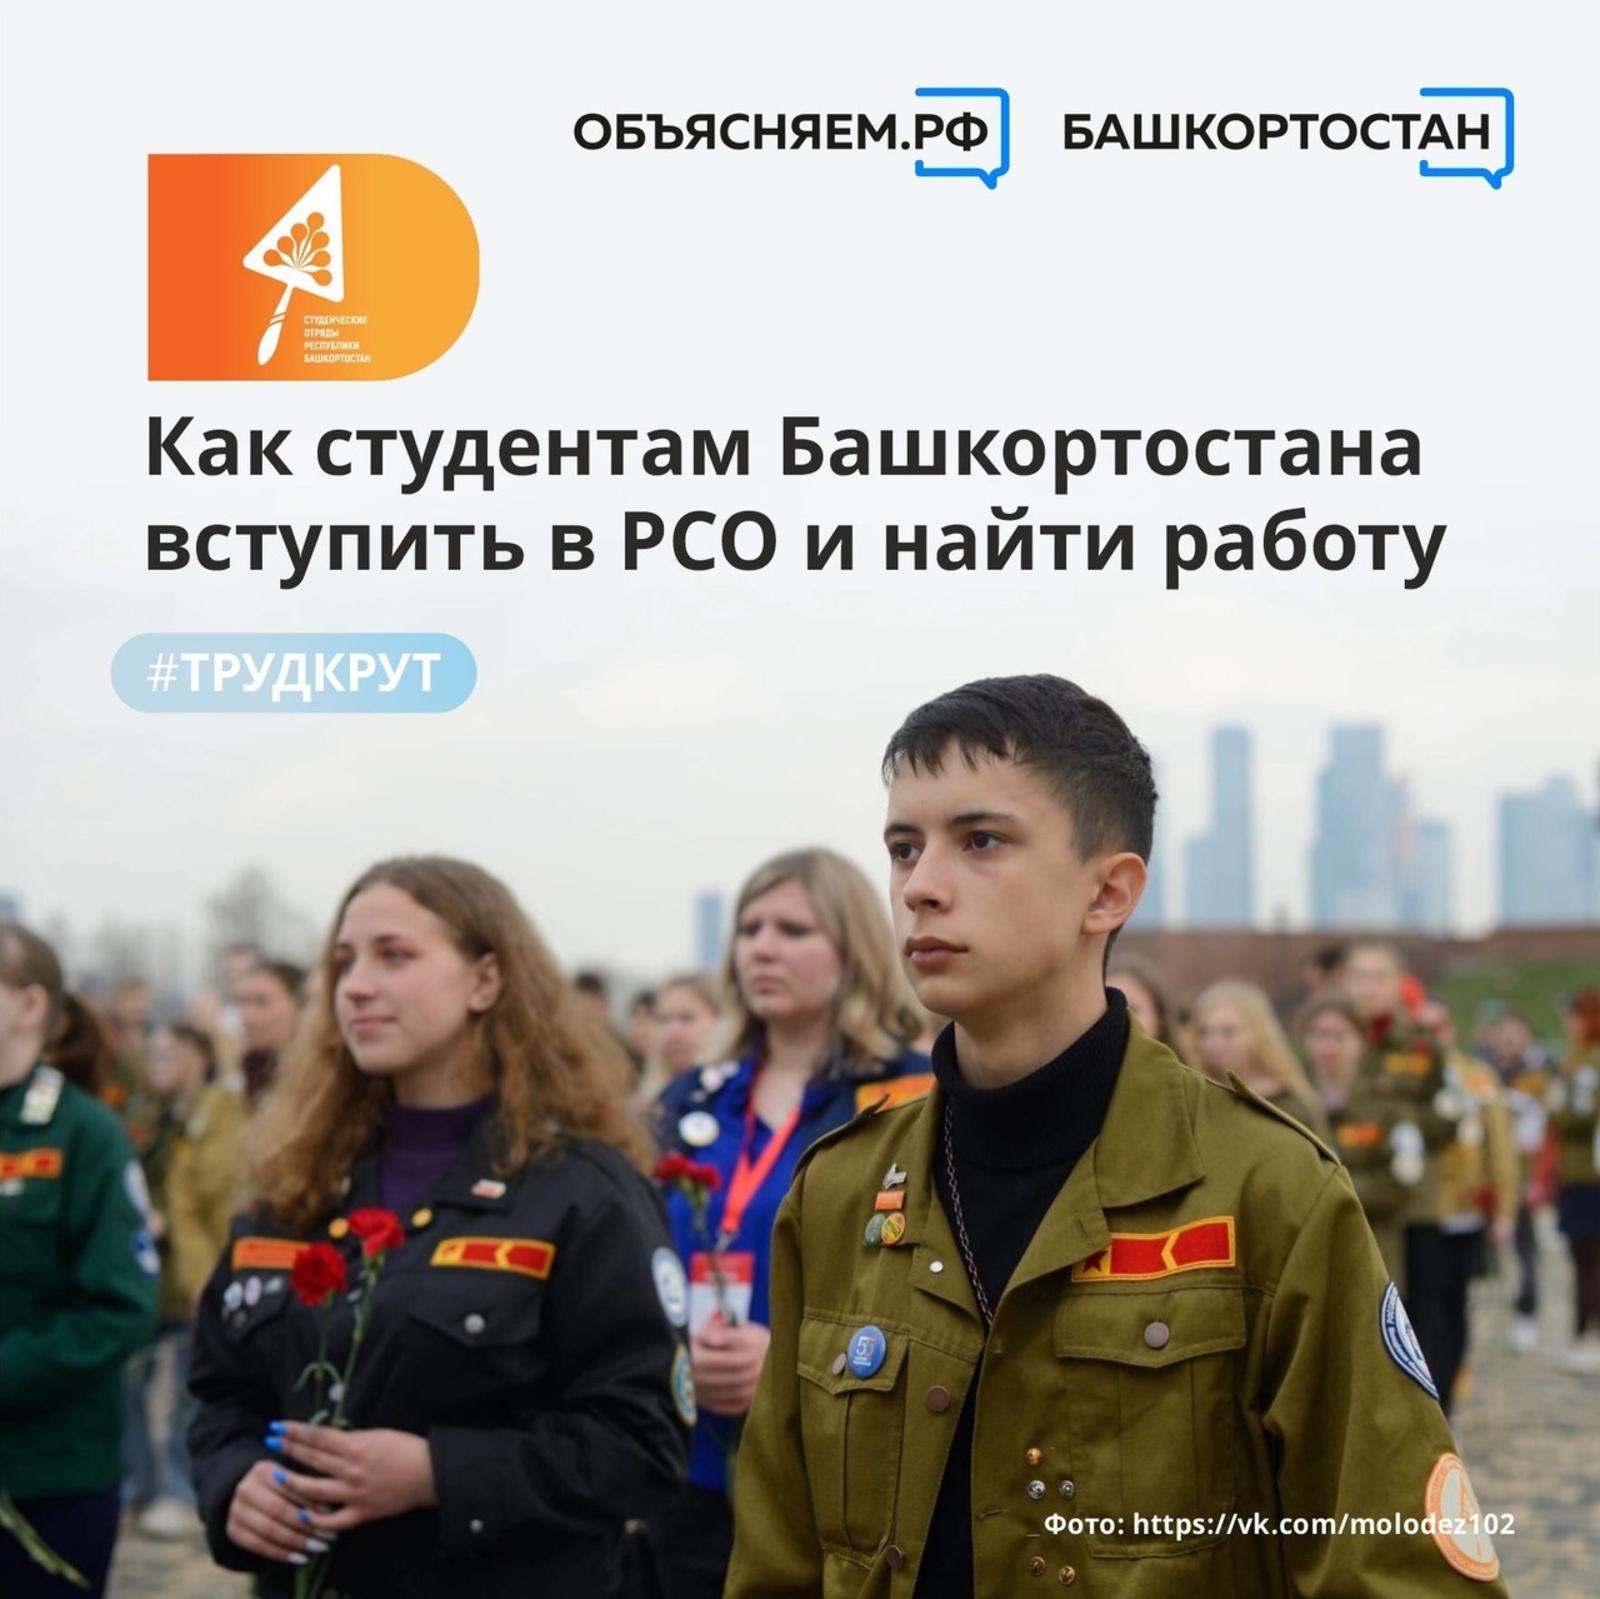 Участие в Российских студенческих отрядах (РСО) может помочь в официальном трудоустройстве студентам Башкортостана